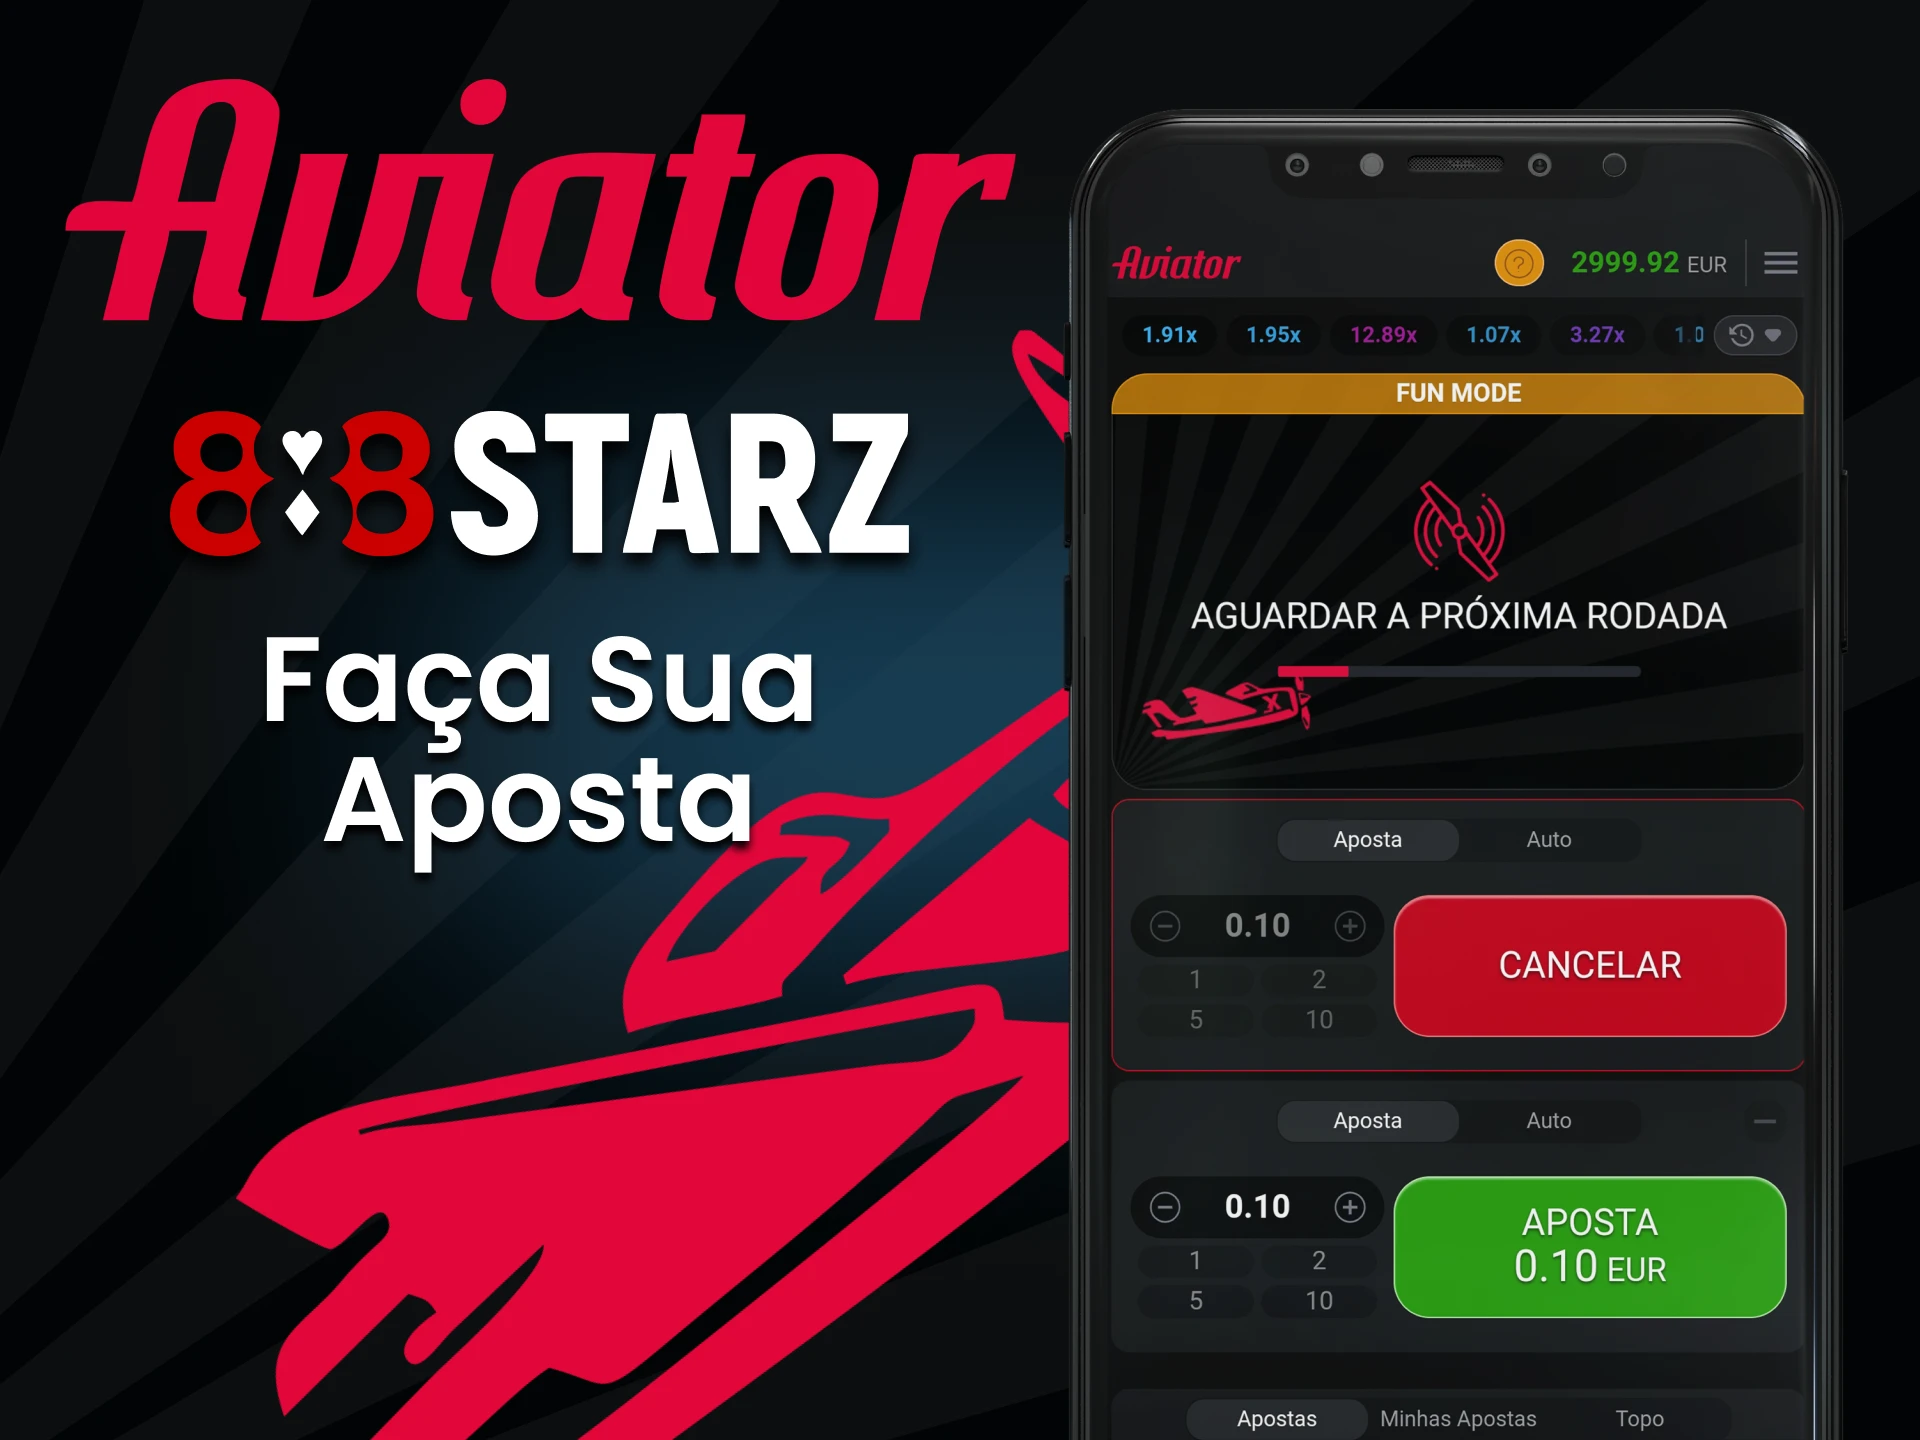 Faça sua primeira aposta no jogo Aviator por meio do aplicativo 888starz.